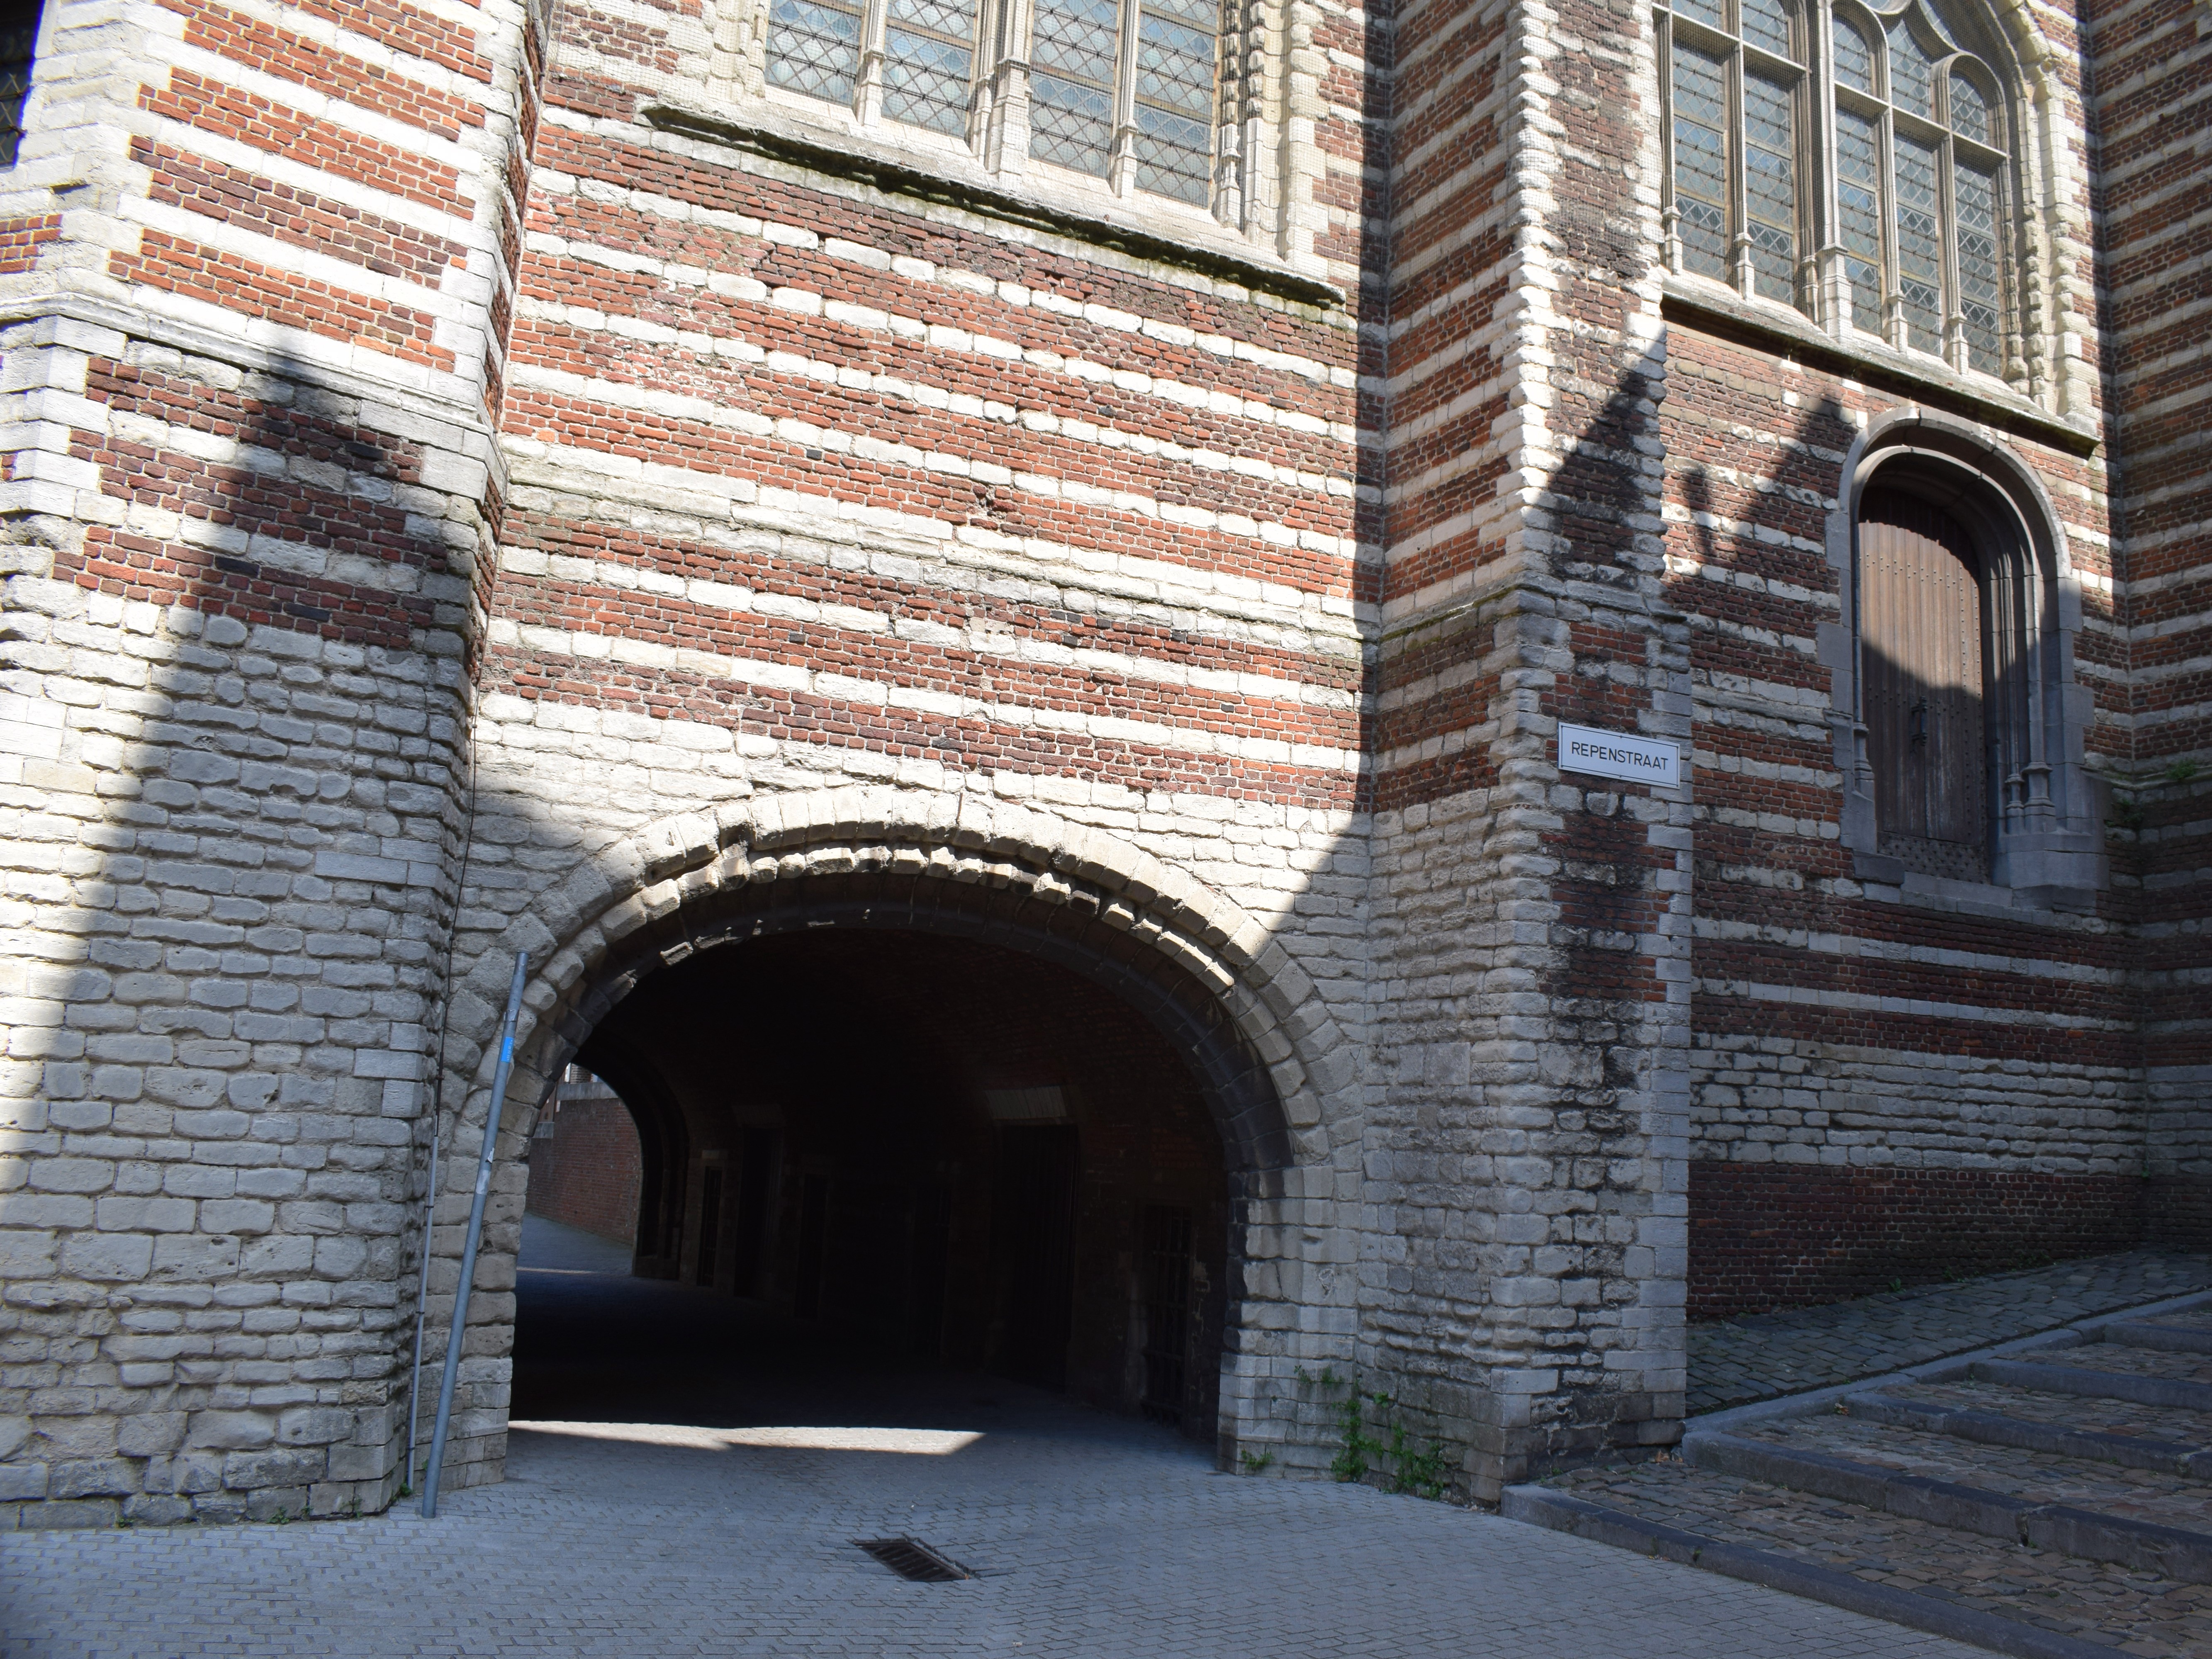 Archway, Museum Vleeshuis, Antwerp, Belgium